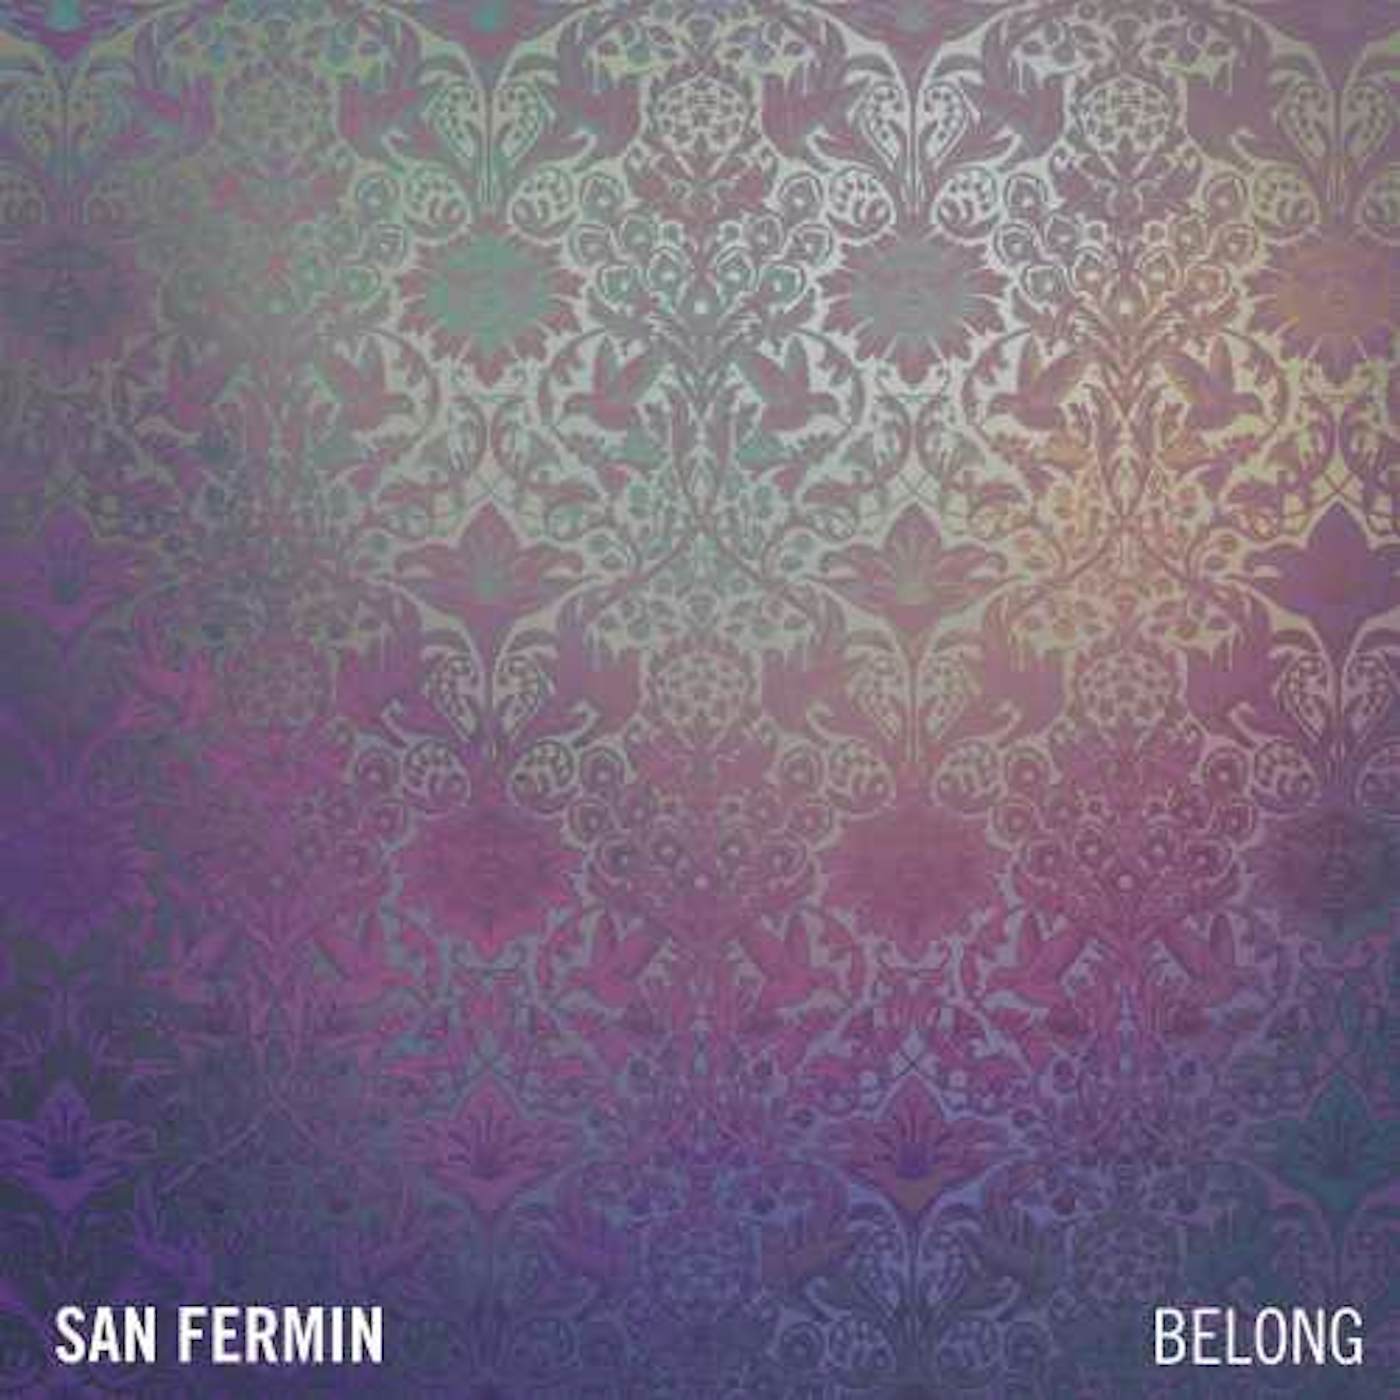 San Fermin BELONG CD